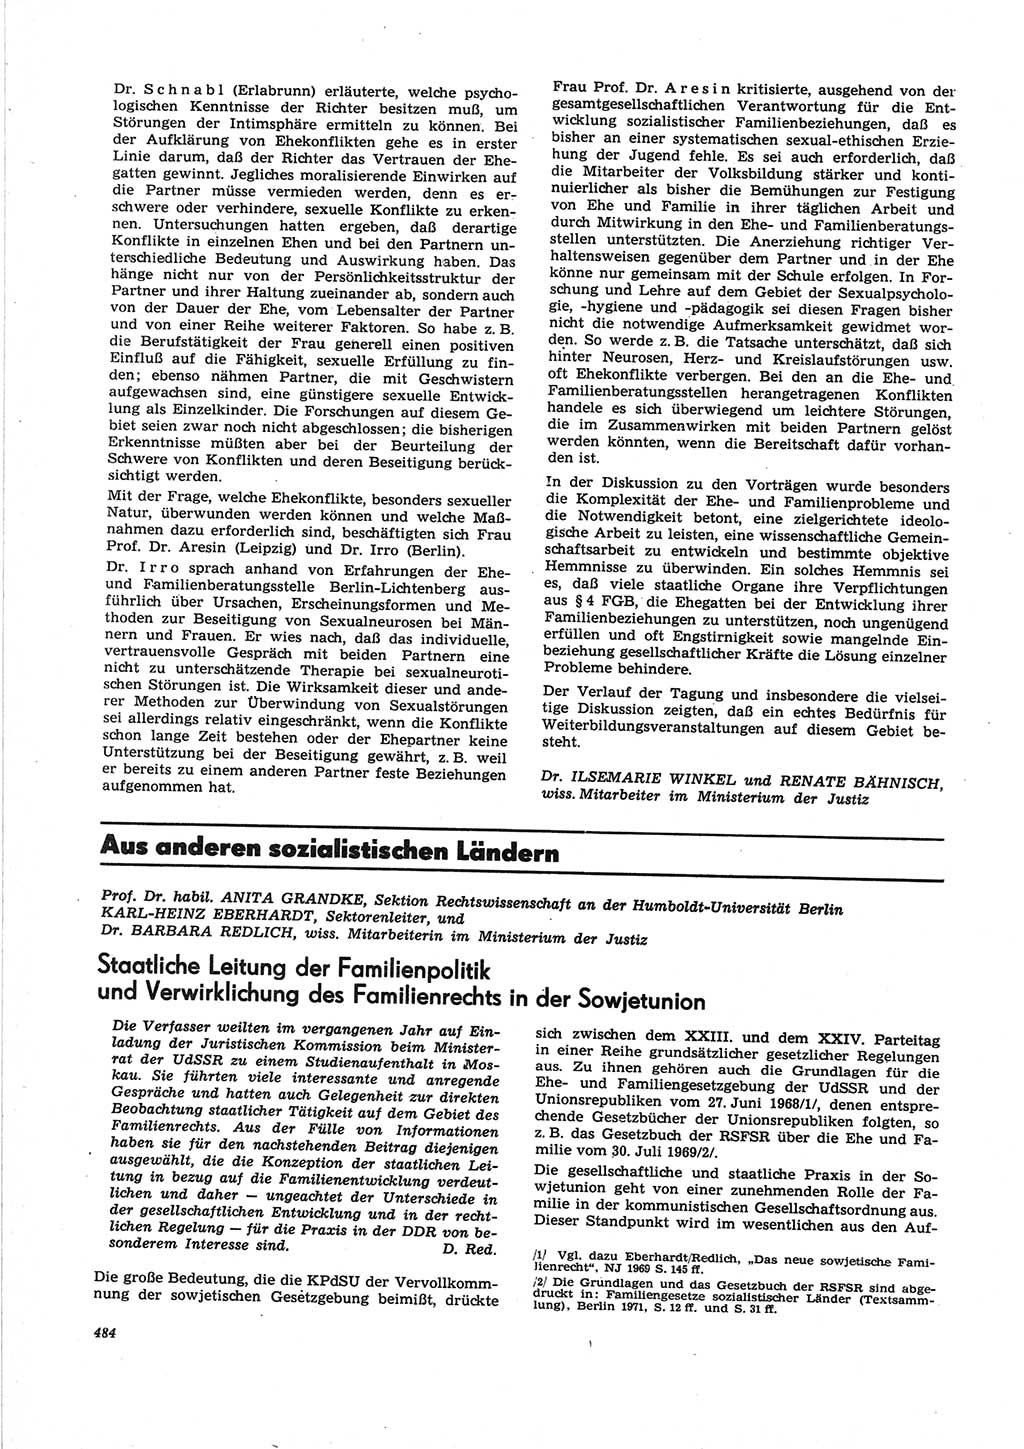 Neue Justiz (NJ), Zeitschrift für Recht und Rechtswissenschaft [Deutsche Demokratische Republik (DDR)], 25. Jahrgang 1971, Seite 484 (NJ DDR 1971, S. 484)